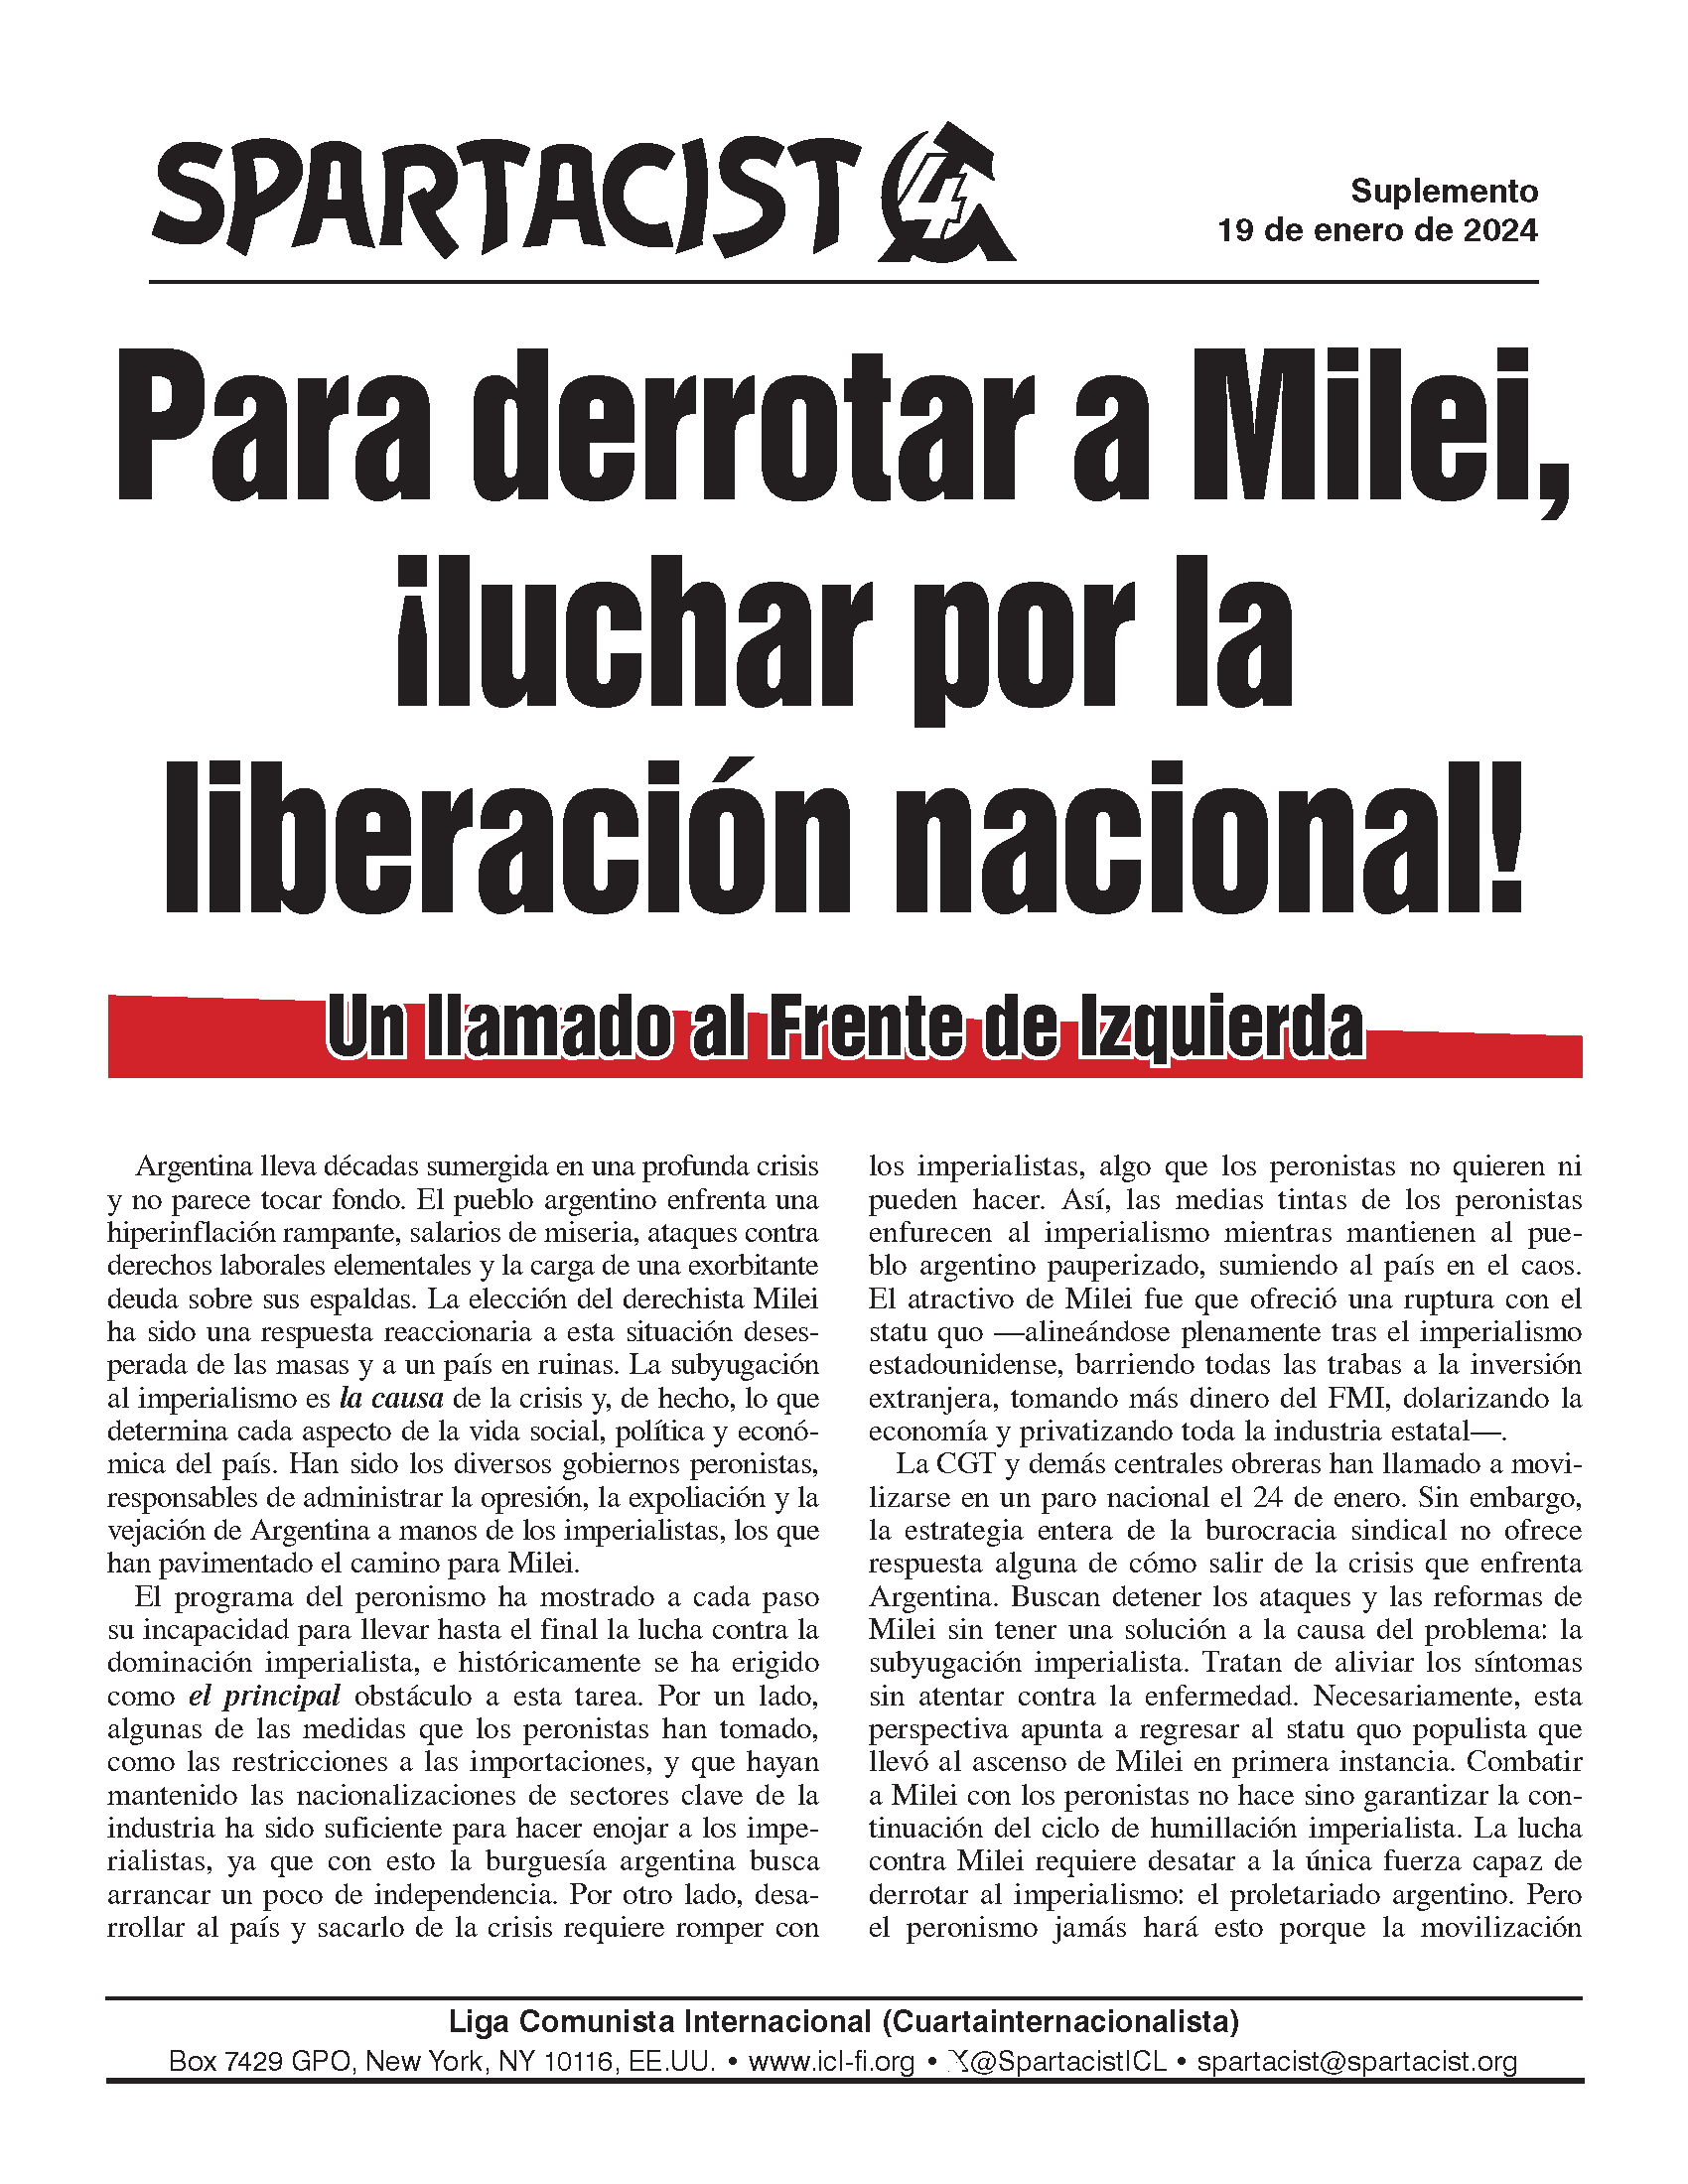 suplemento Spartacist (edición en español)  |  19 de enero de 2024